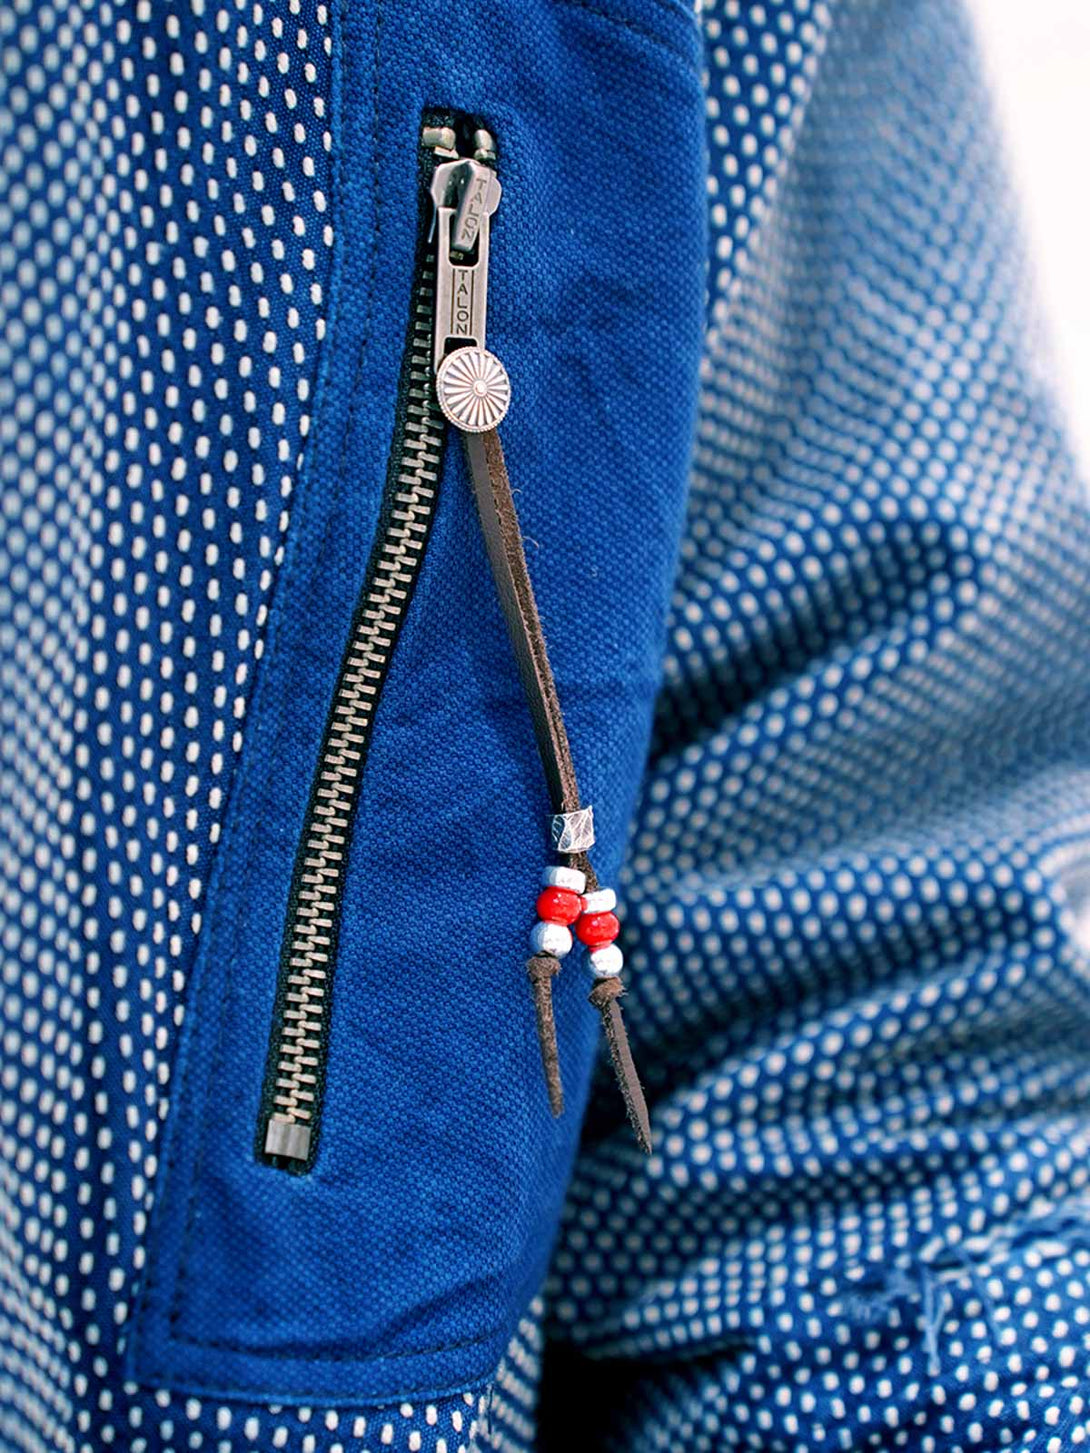 モデルが着用する藍染刺し子ワークシャツジャケットの展示図